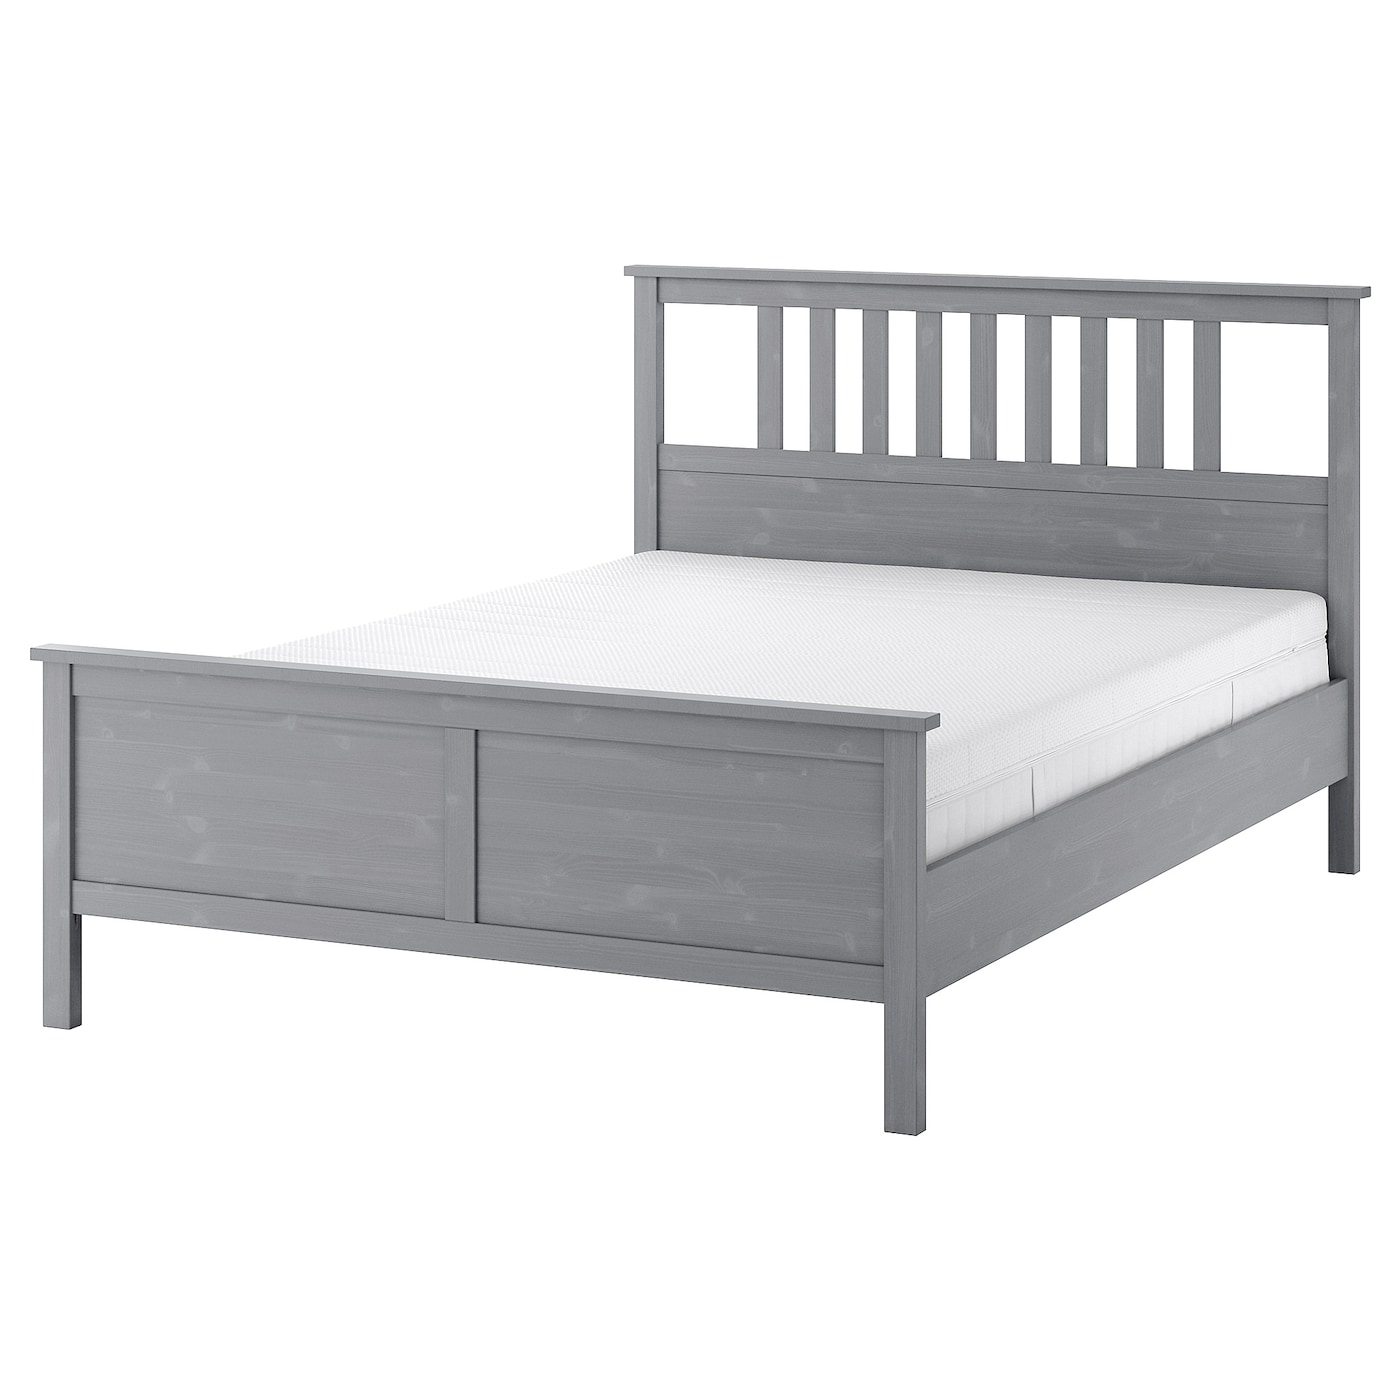 Каркас кровати - IKEA HEMNES, 200х160 см, жесткий матрас, серый, ХЕМНЕС ИКЕА